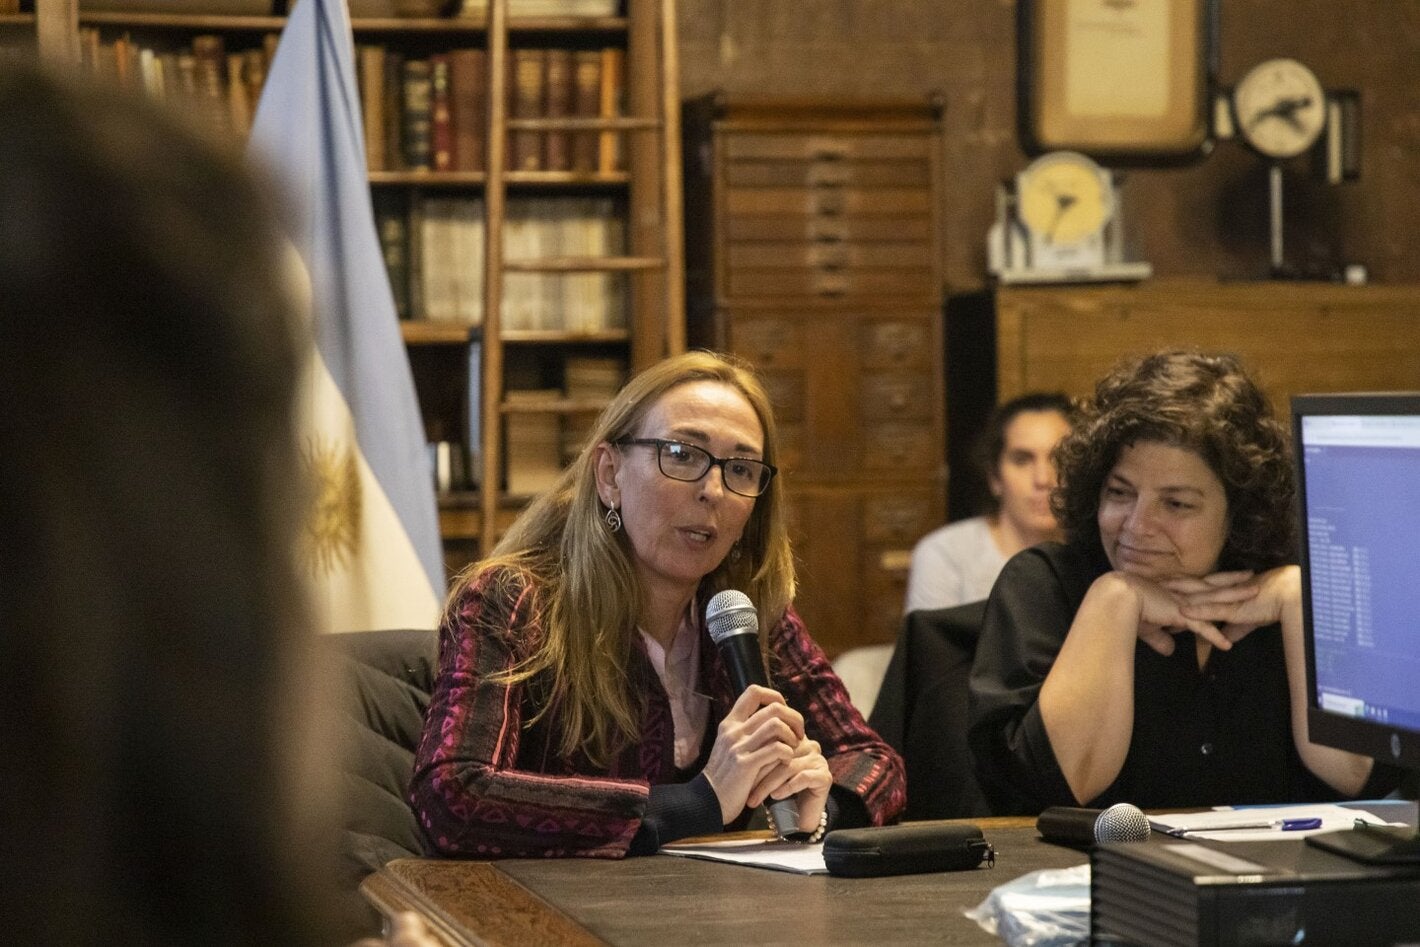 La representante de OPS/OMS en Argentina, Eva Jané Llopis, durante la capacitación. Foto: gentileza ANLIS Malbrán.